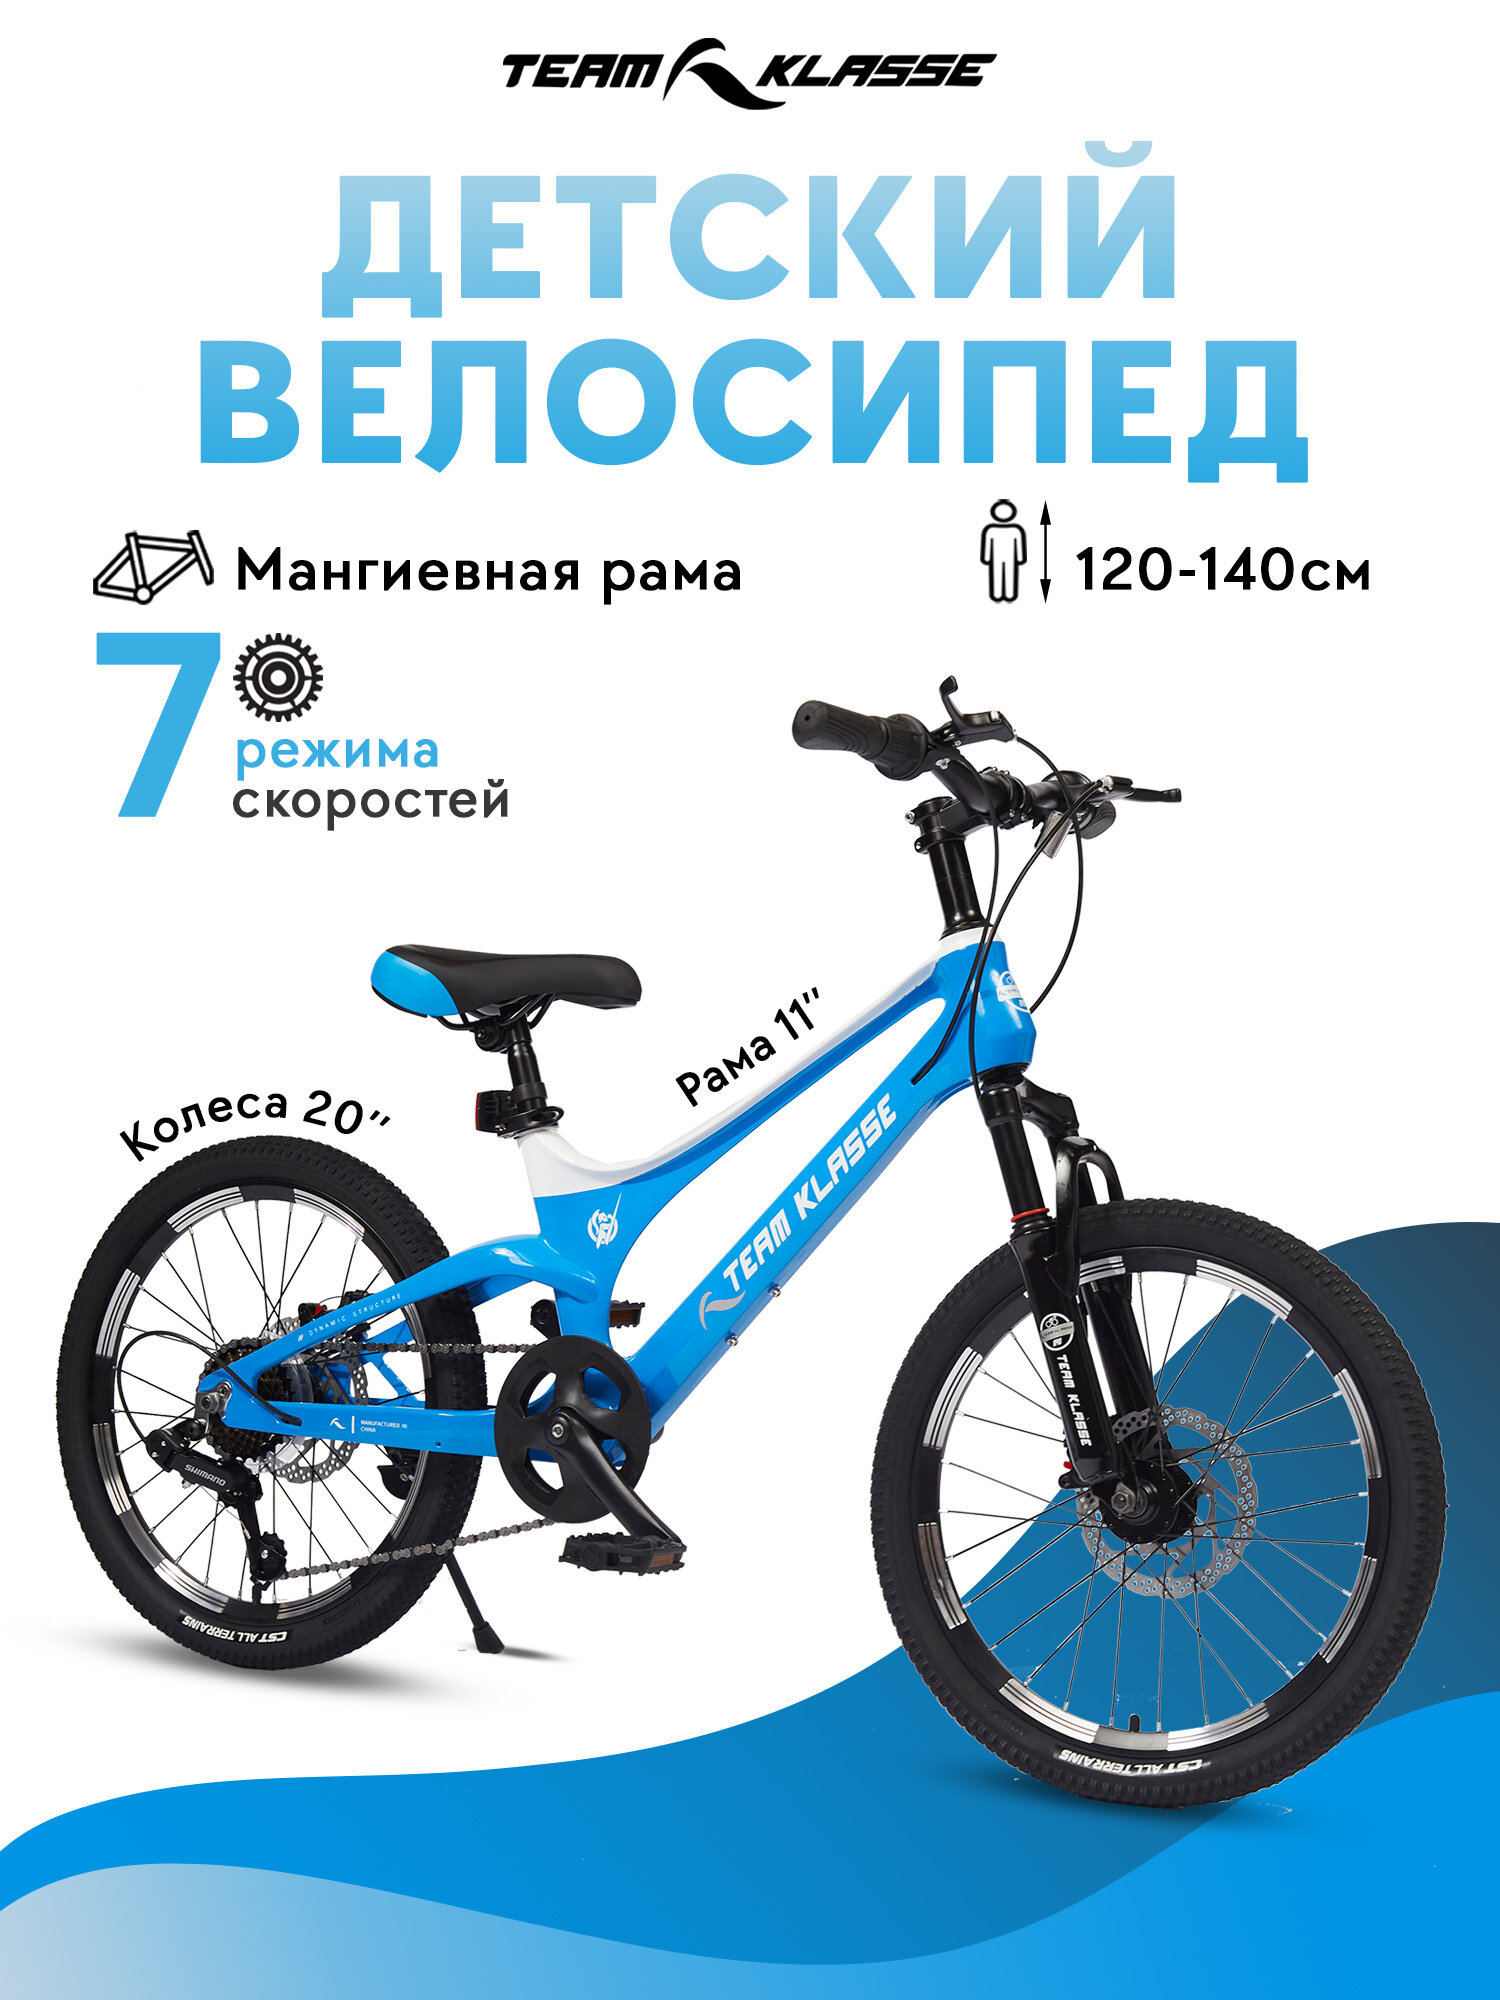 Горный детский велосипед Team Klasse F-3-C, голубой, диаметр колес 20 дюймов